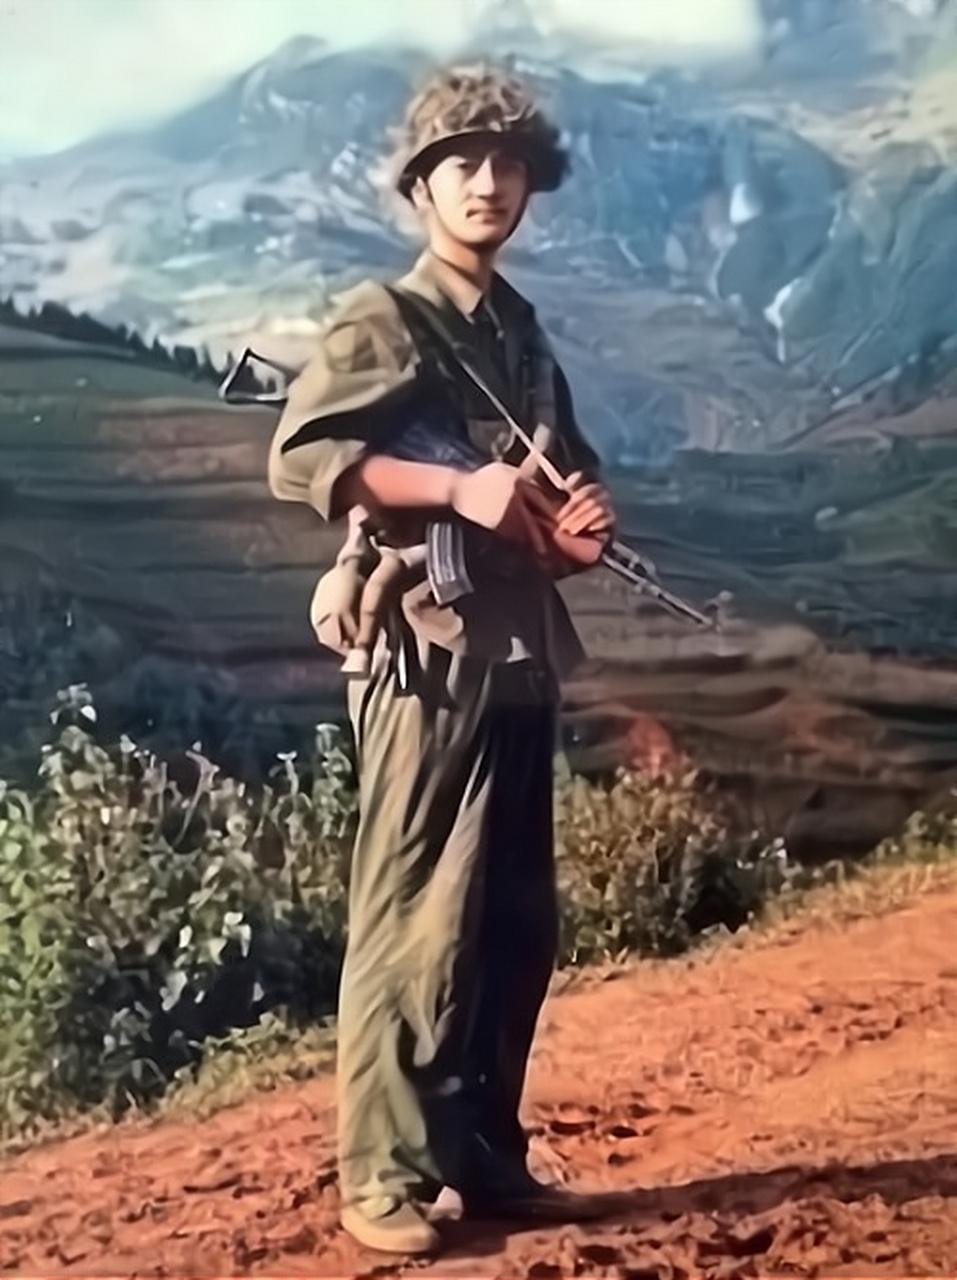 1985年,在老山战役期间,侦察兵荣伟牺牲前留下的照片,画面中的他年轻